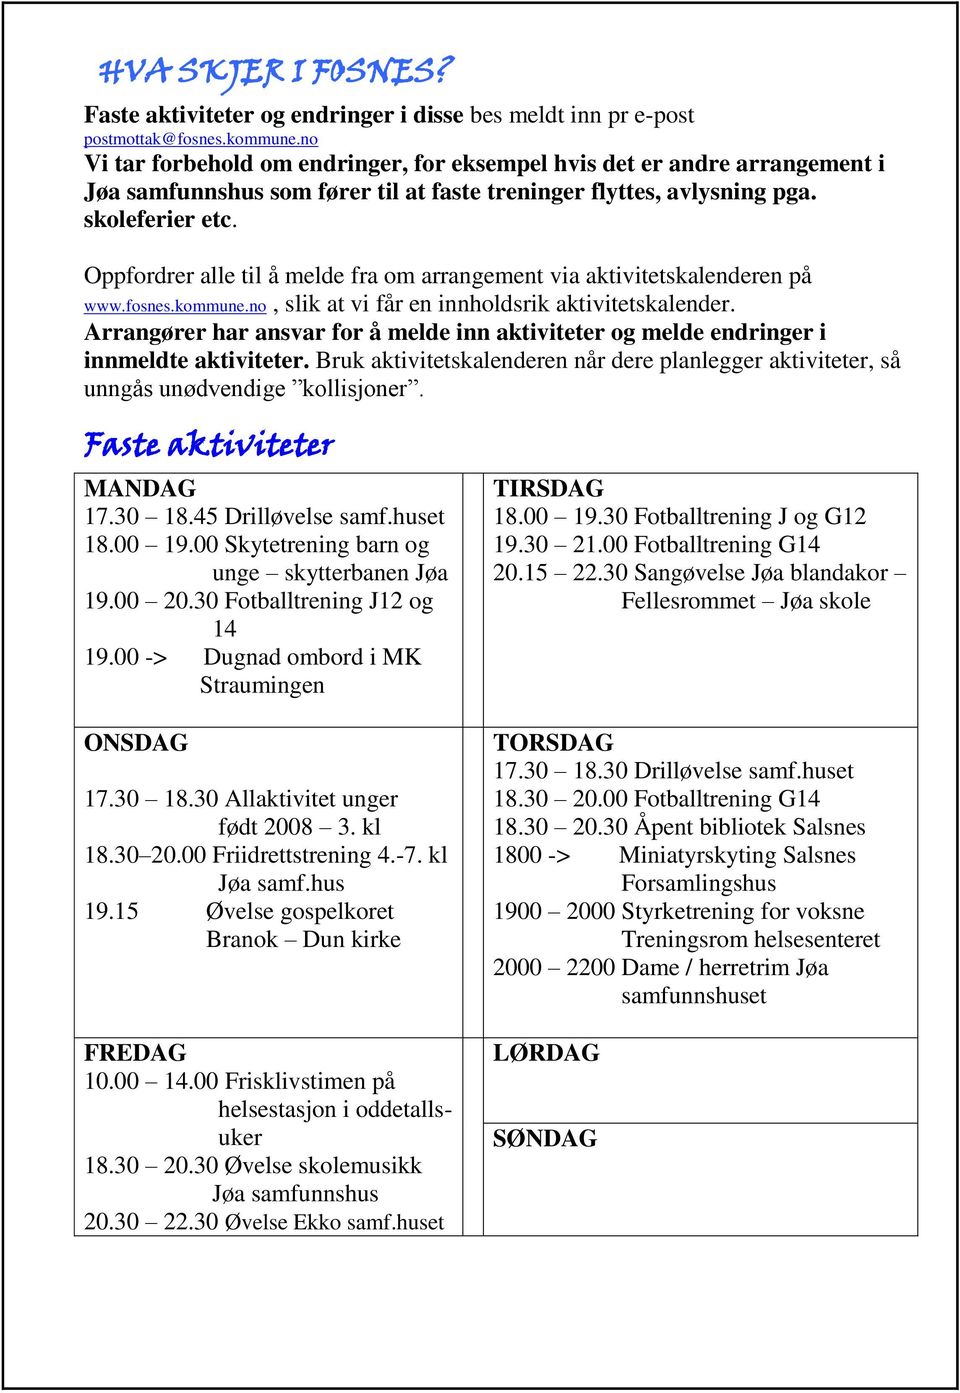 Oppfordrer alle til å melde fra om arrangement via aktivitetskalenderen på www.fosnes.kommune.no, slik at vi får en innholdsrik aktivitetskalender.